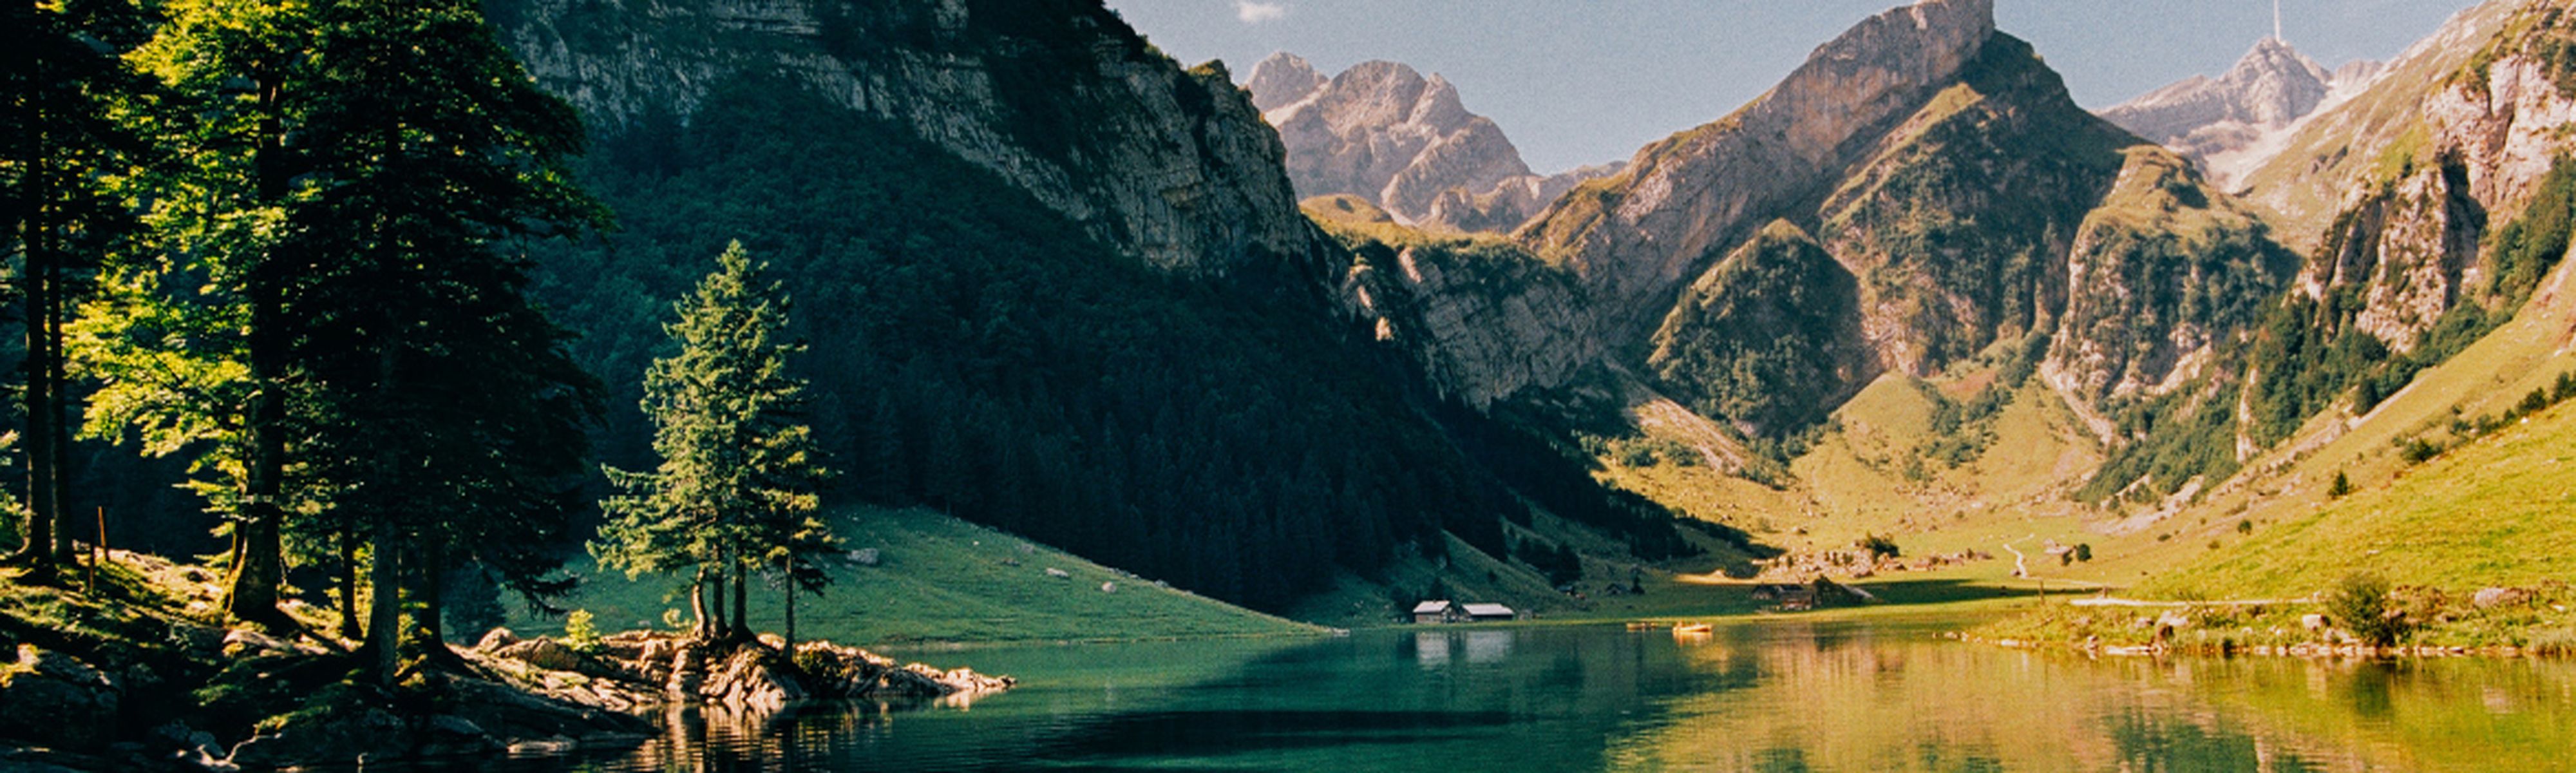 Seealpsee Lake in Switzerland